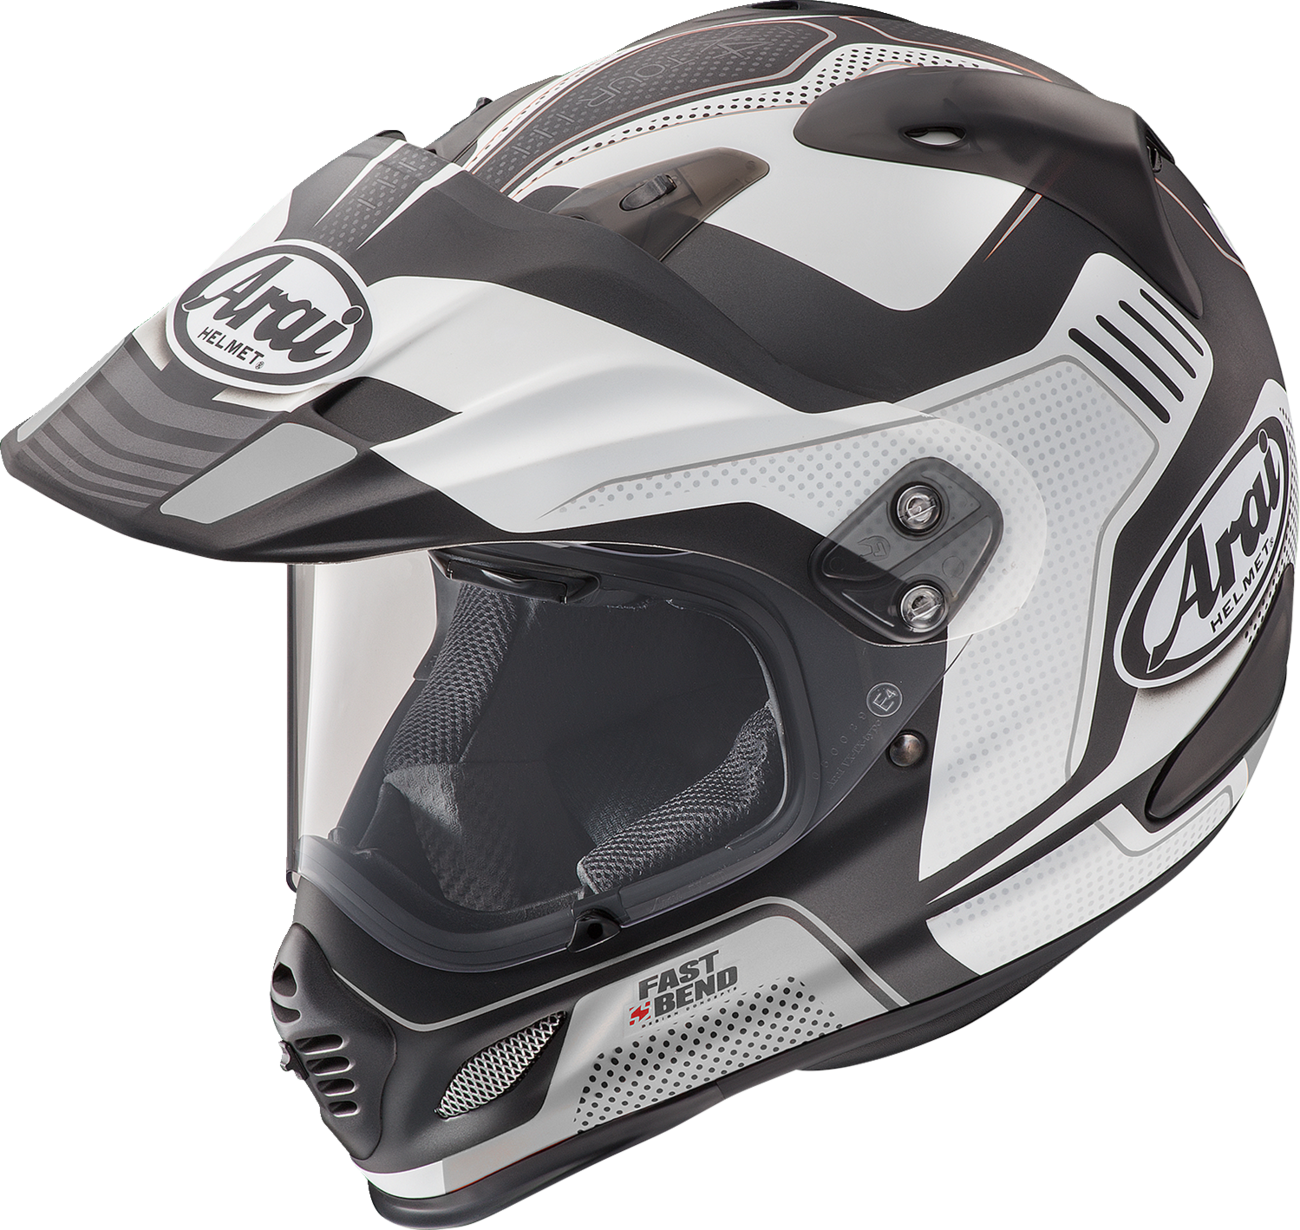 ARAI XD-4 Helmet - Vision - White Frost - Large 0140-0158